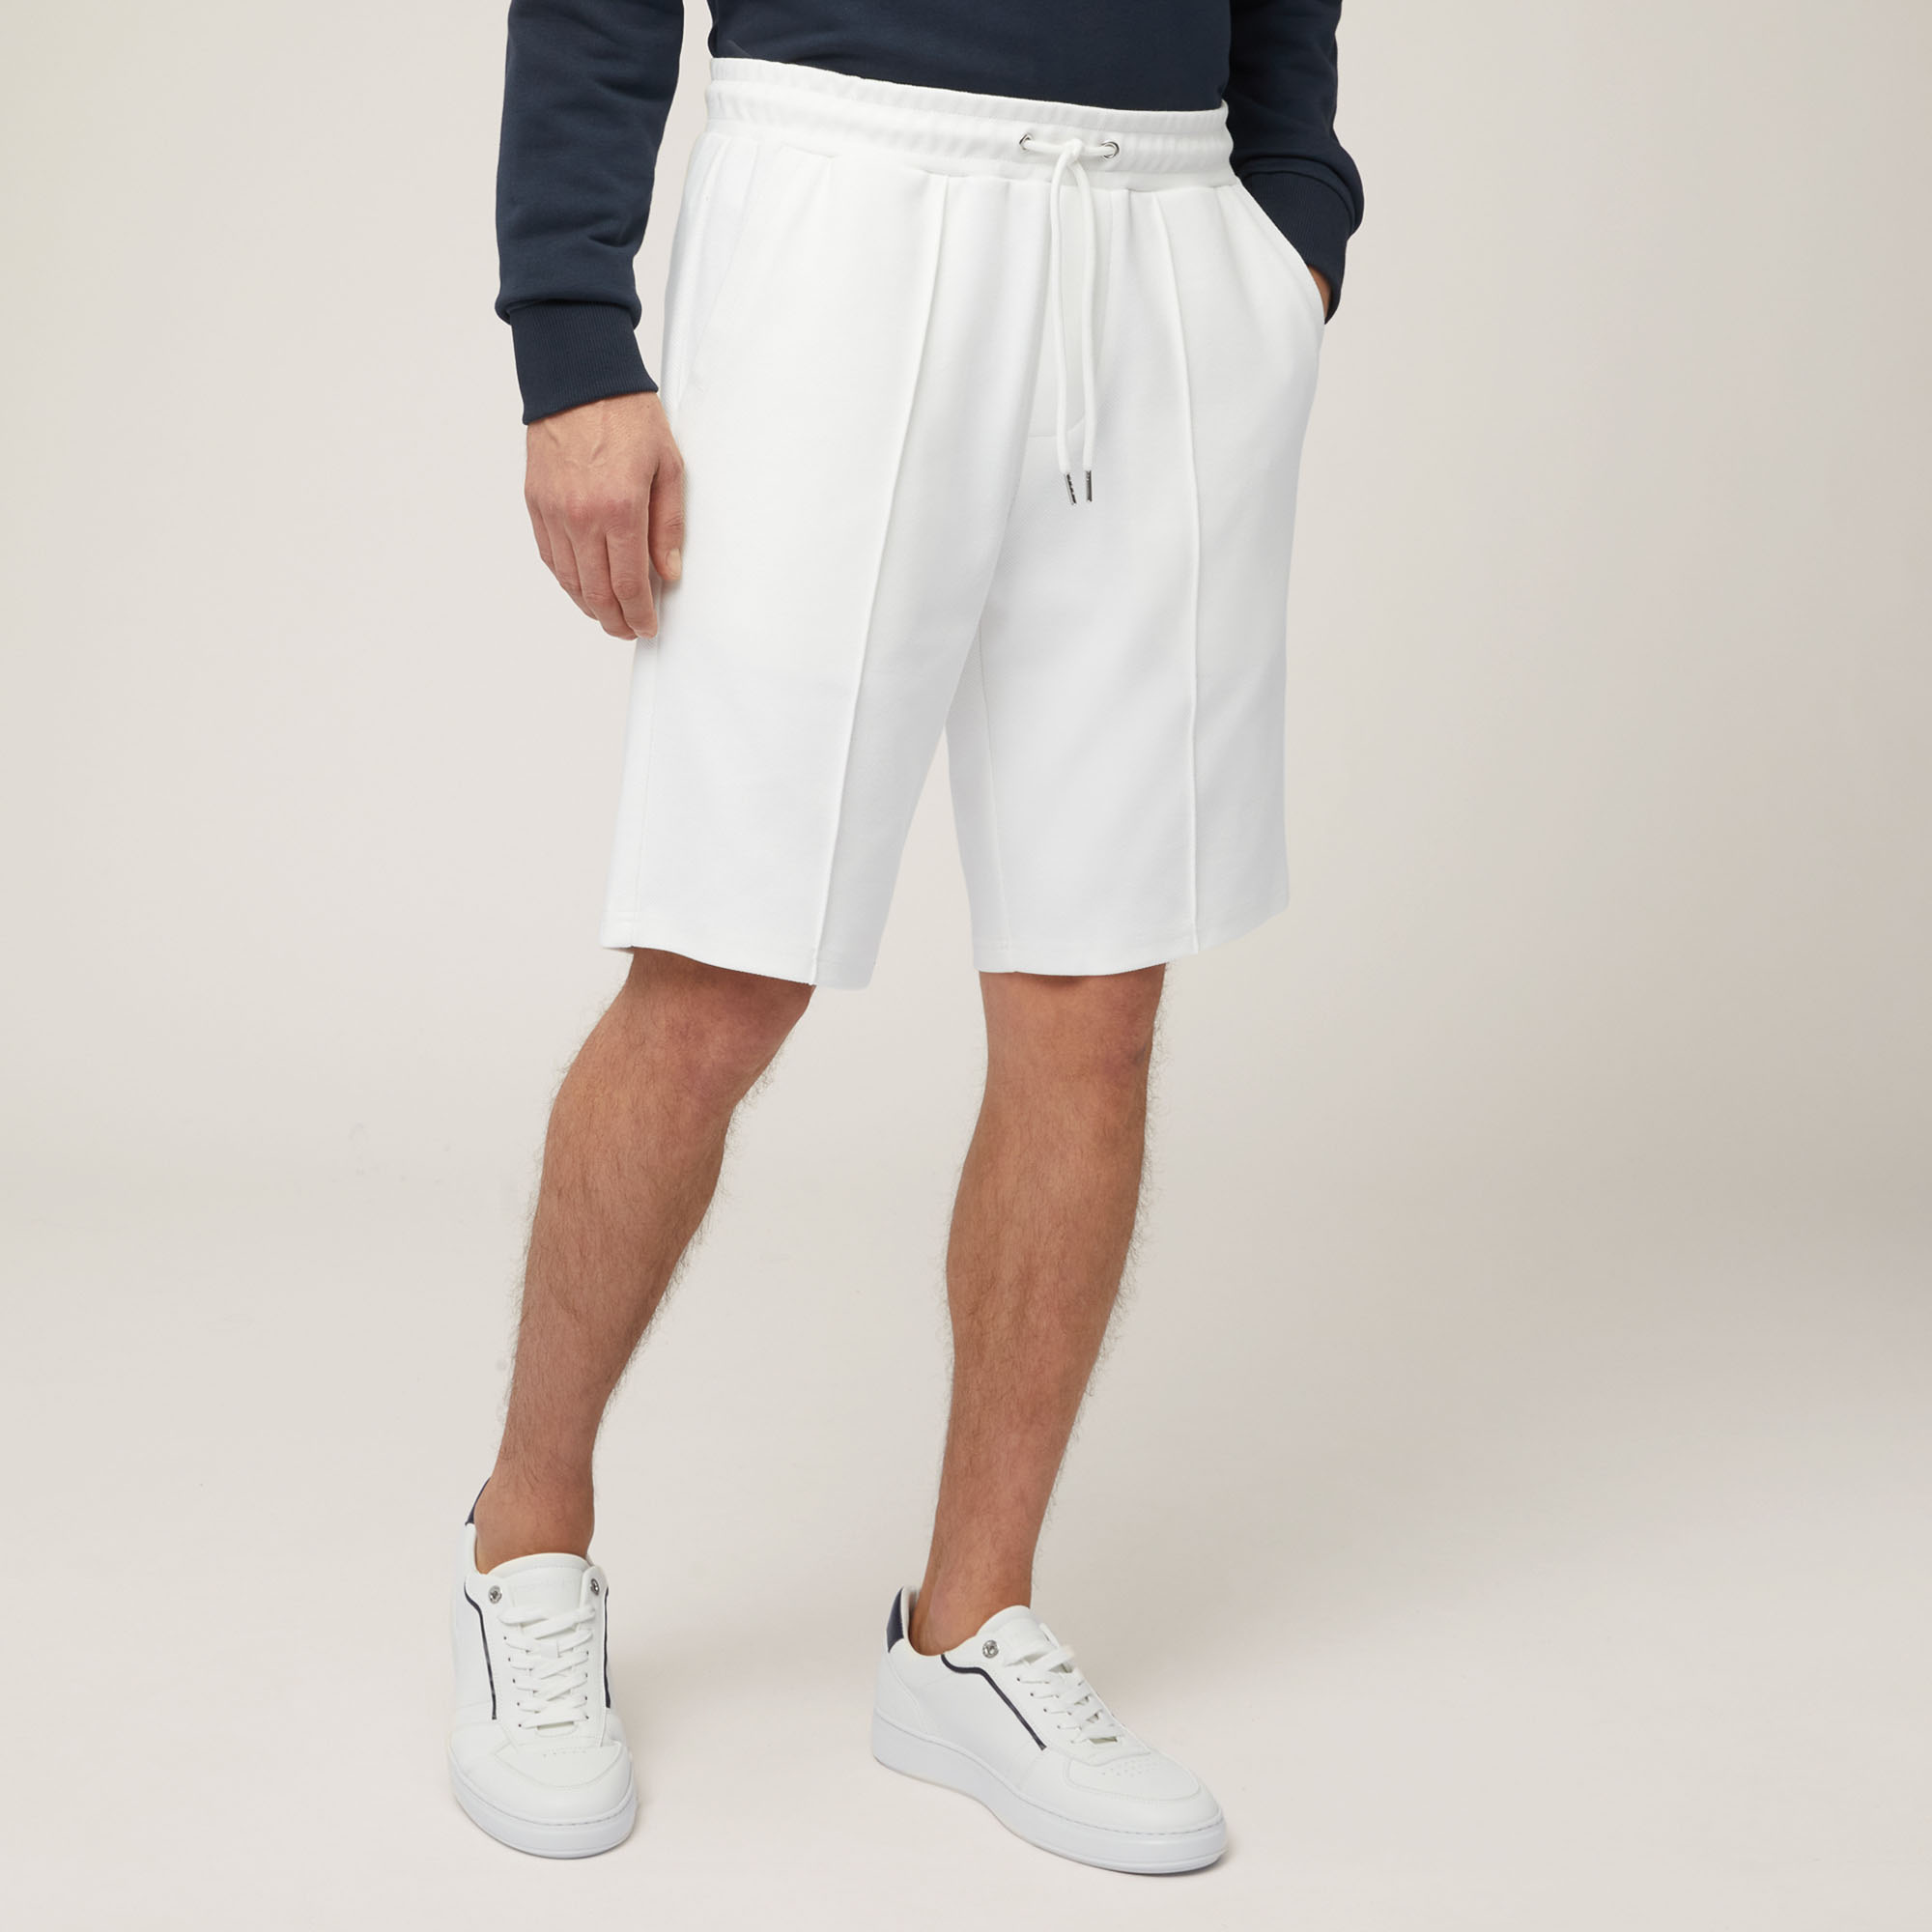 Shorts aus Stretch-Baumwolle mit Tasche hinten, Weiß, large image number 0